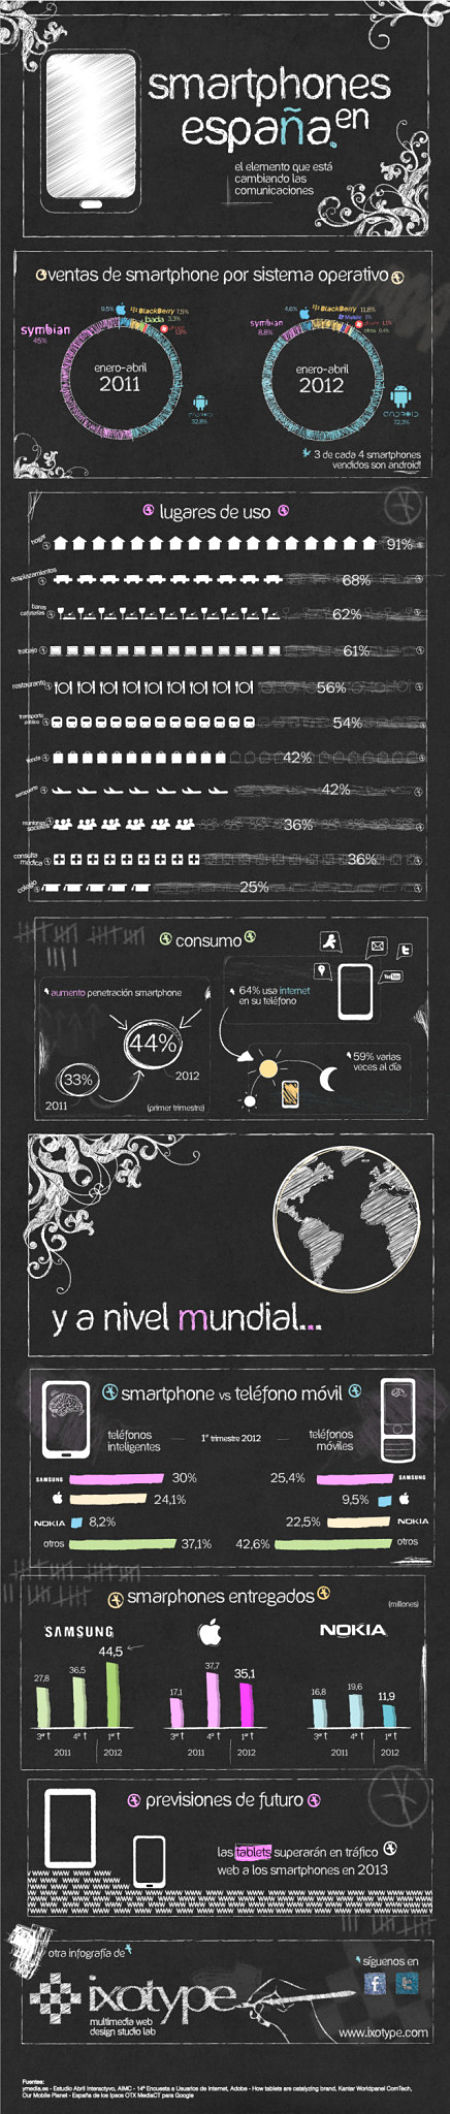 Actualidad Informática. Infografía: smartphones en España. Rafael Barzanallana